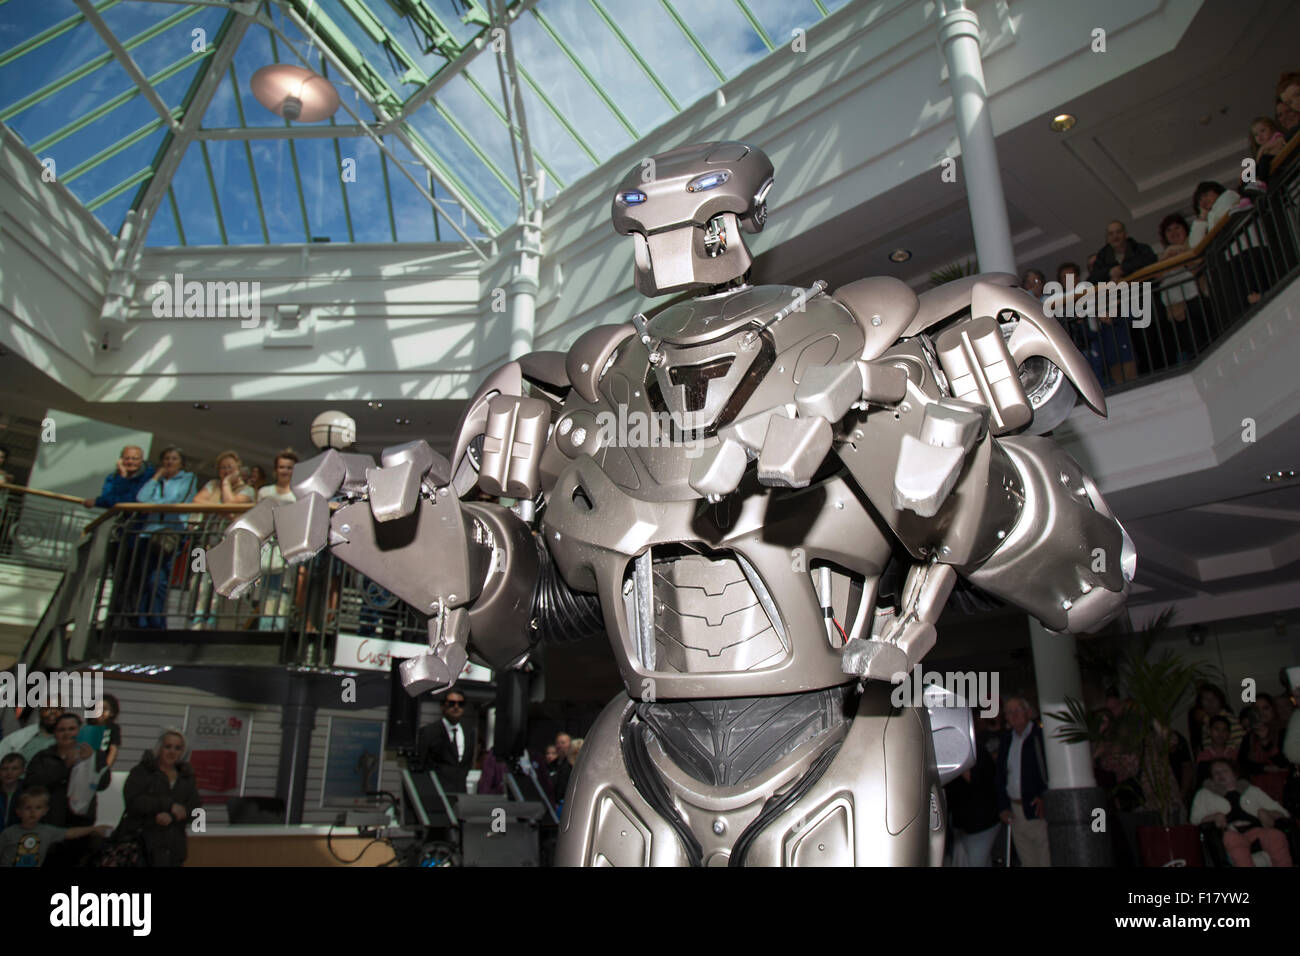 Preston, Lancashire, 29. August 2015. Schließen Enncounter als EXO Titan der Roboter visits St George's Center. Titan der Roboter die Bühne Name einer Kostüm von Cyberstein Robots Ltd. im Jahr 2004 erstellt wurde, ist es Metall Kostüm getragen nicht ein exoskelett. Der Roboter Kostüm ist ca. 2,4 m (7,9 ft.) hoch und 60 kg (9.4) und steigt auf 350 kg (55) Einschließlich der Warenkorb Sie reitet auf Ausrüstung und. Das Gesicht sieht aus wie ein Schädel, und einige haben es sogar an einen Transformator im Vergleich. Stockfoto